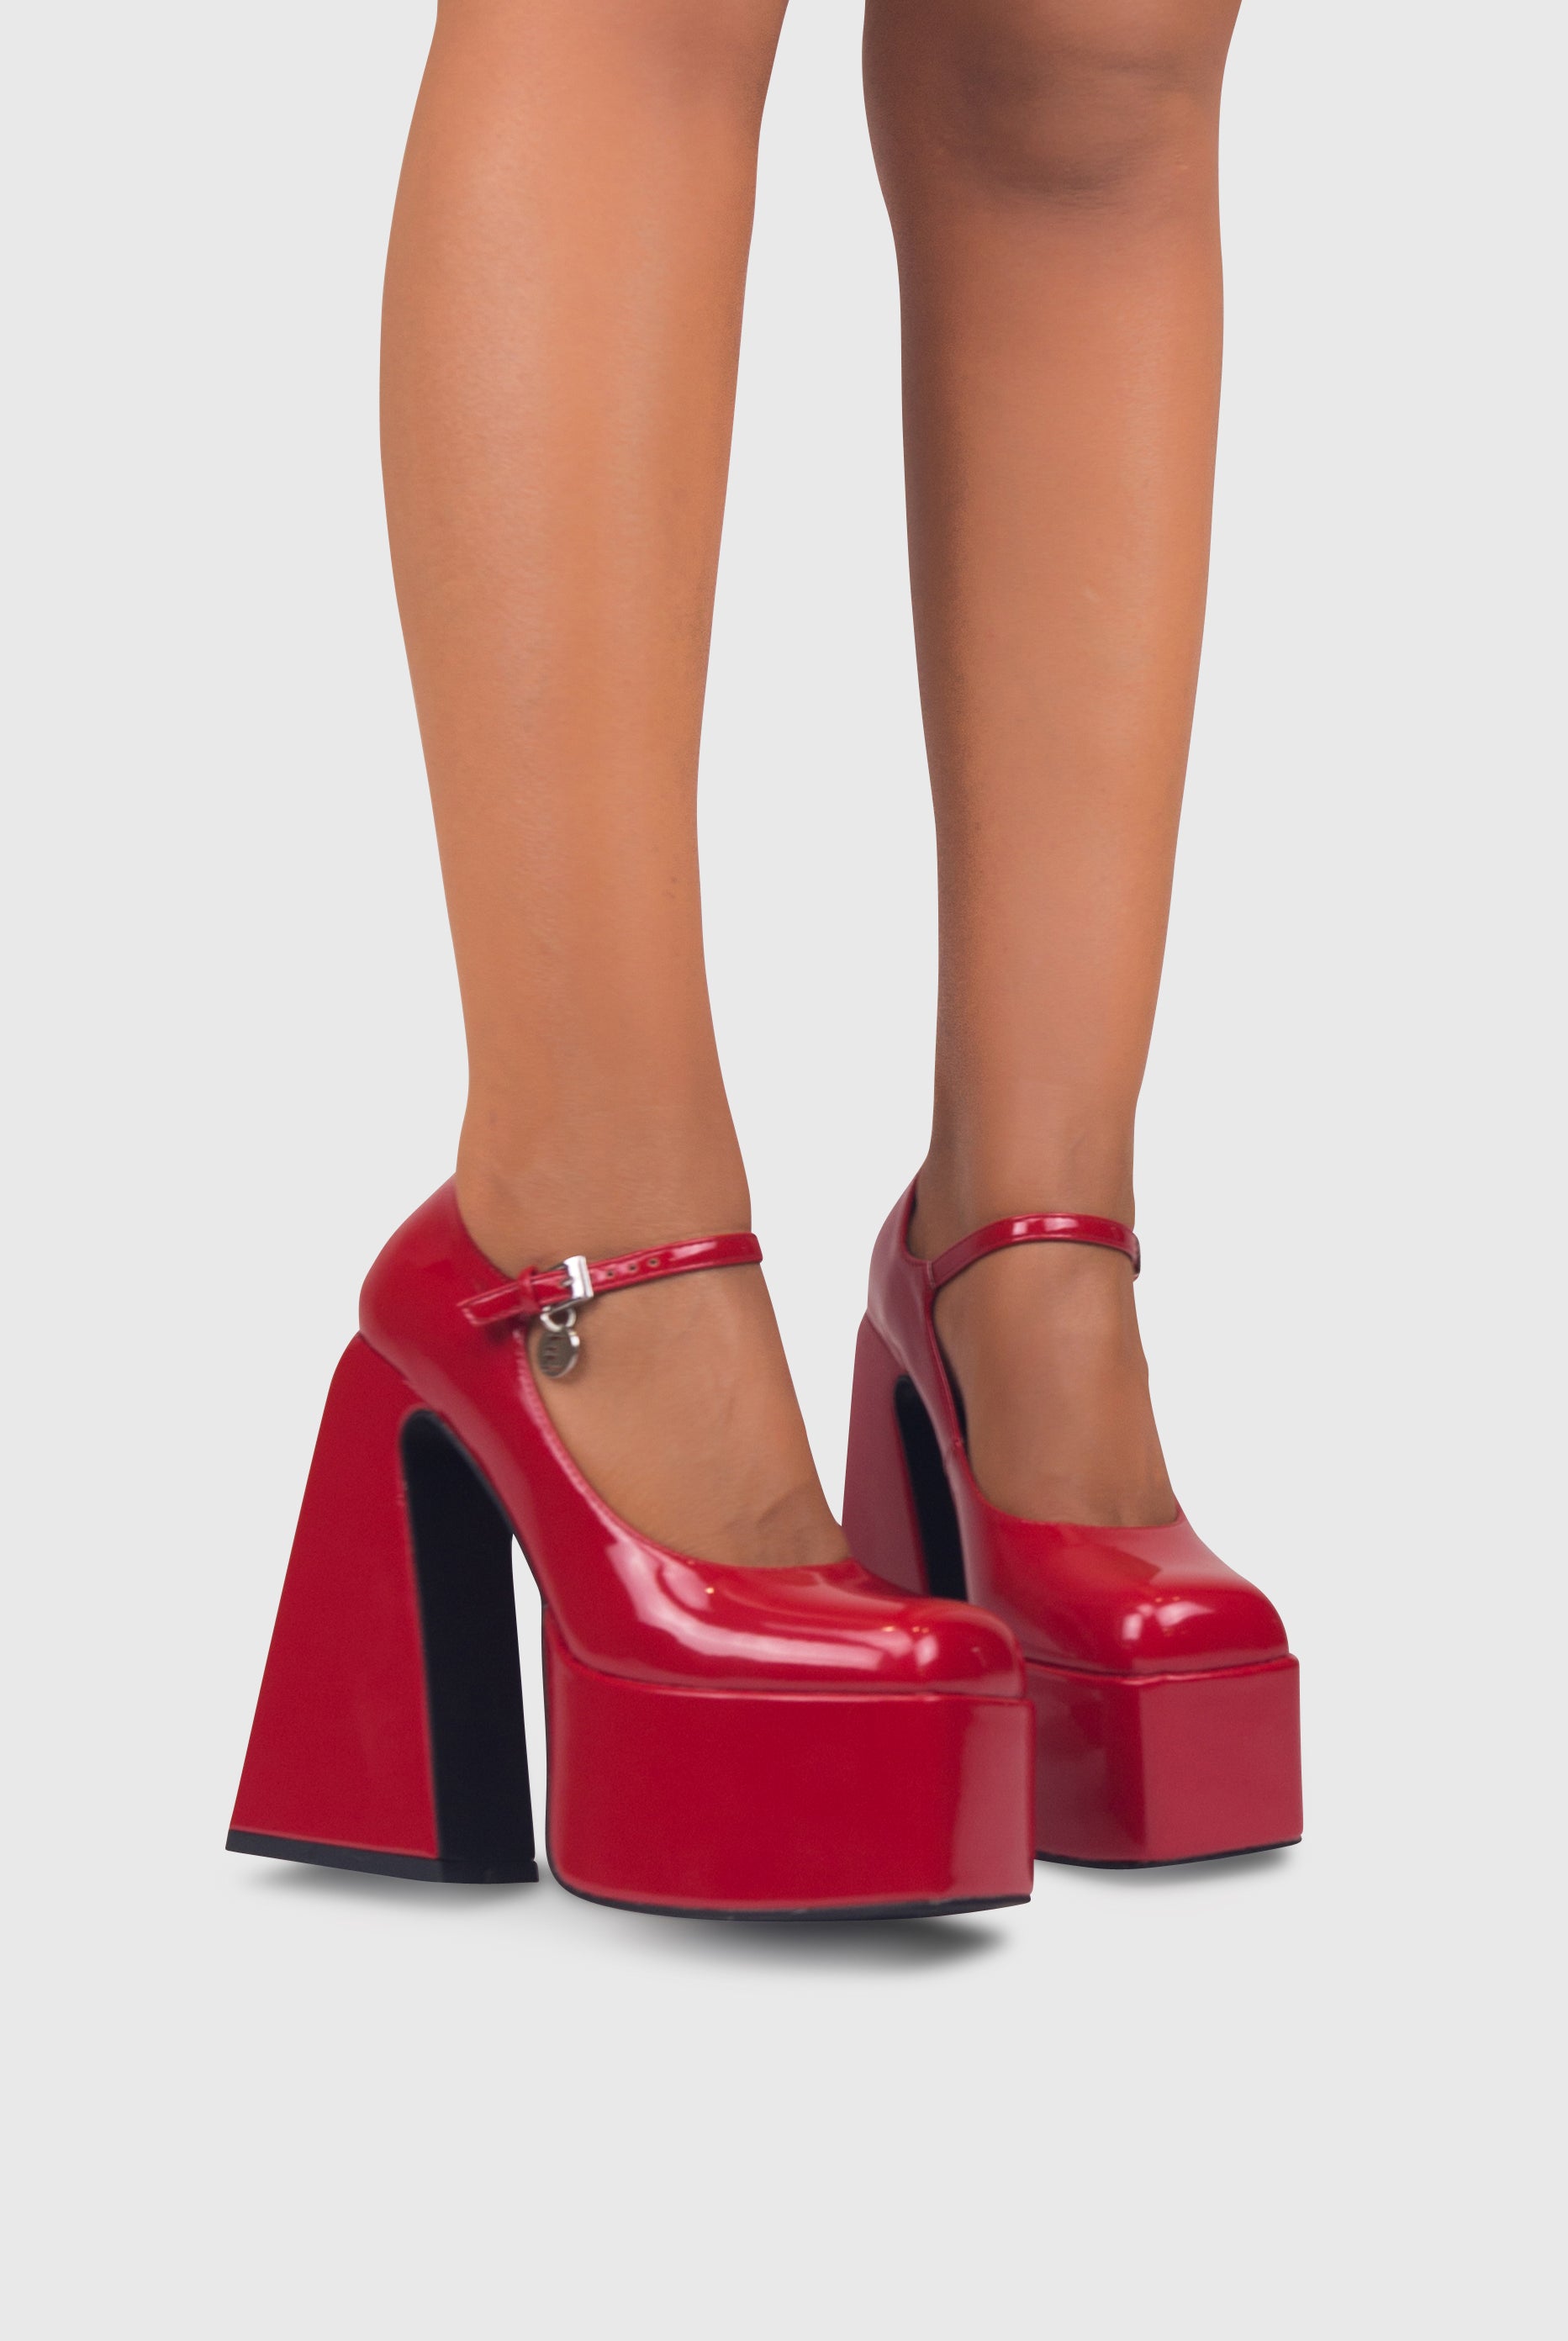 Scarpe con tacco largo e plateau con punta quadrata rosso | ENPOSH